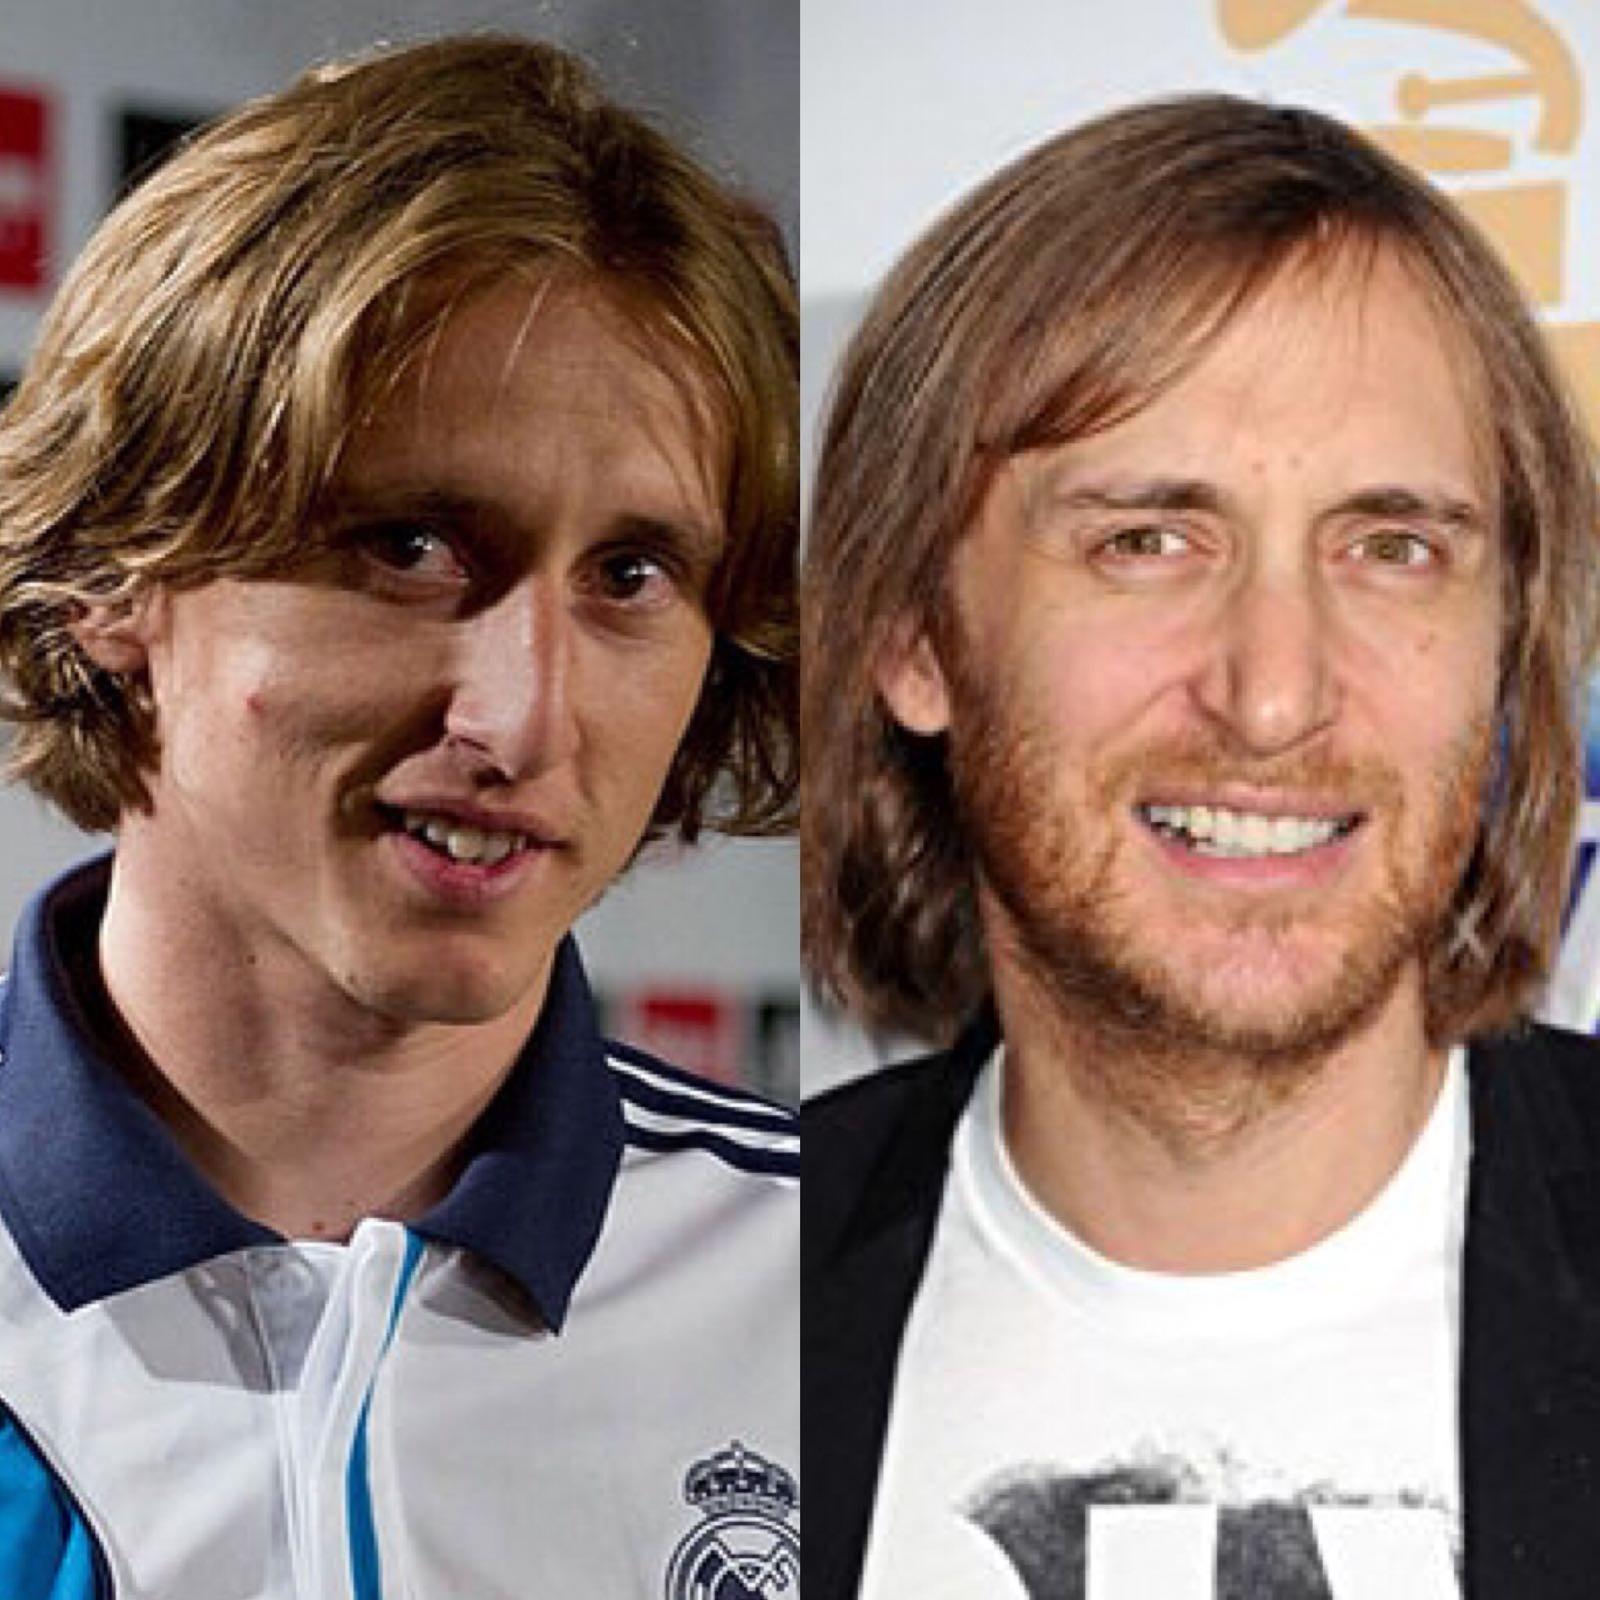 Luka Modric, capitano della Croazia, ha un sosia nel mondo della musica: David Guetta, il Dj francese che ha composto la sigla per Euro 2016